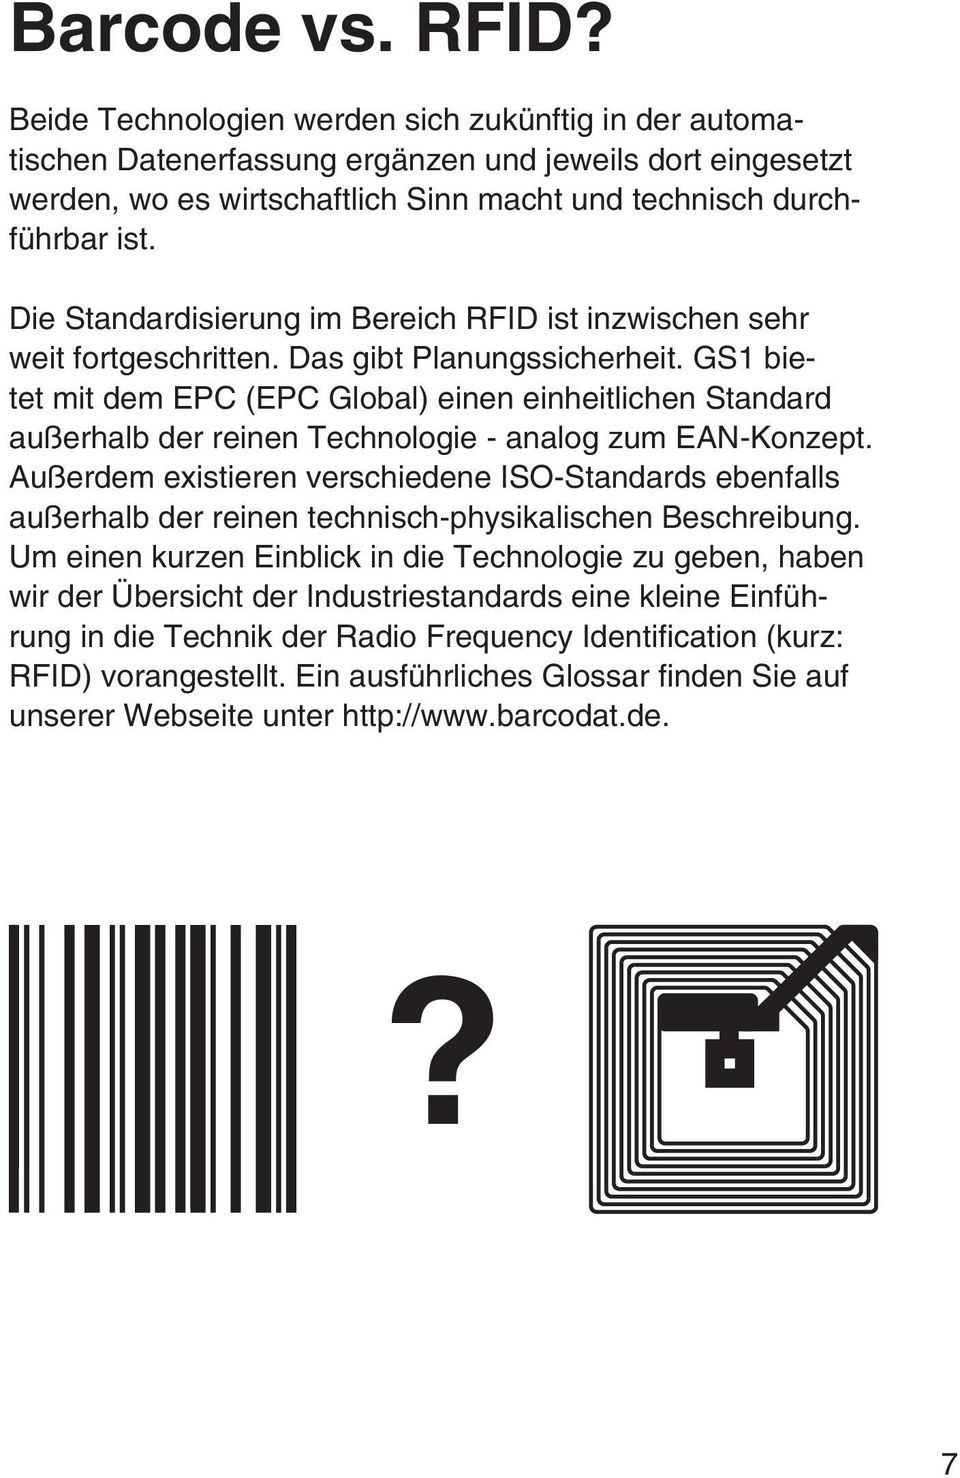 Die Standardisierung im Bereich RFID ist inzwischen sehr weit fortgeschritten. Das gibt Planungssicherheit.